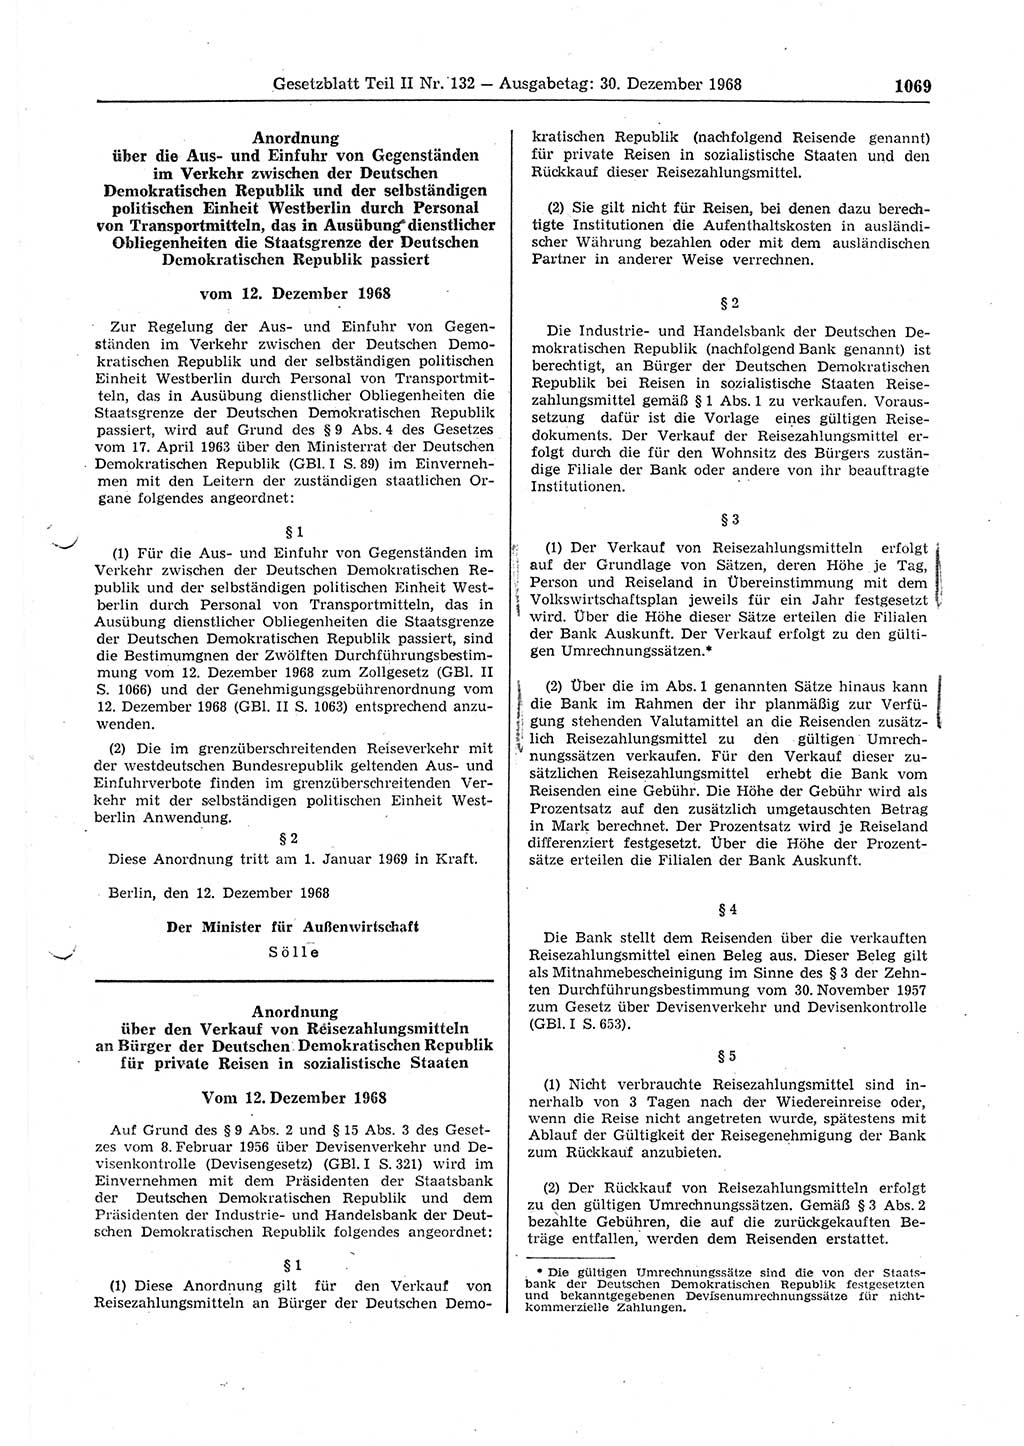 Gesetzblatt (GBl.) der Deutschen Demokratischen Republik (DDR) Teil ⅠⅠ 1968, Seite 1069 (GBl. DDR ⅠⅠ 1968, S. 1069)